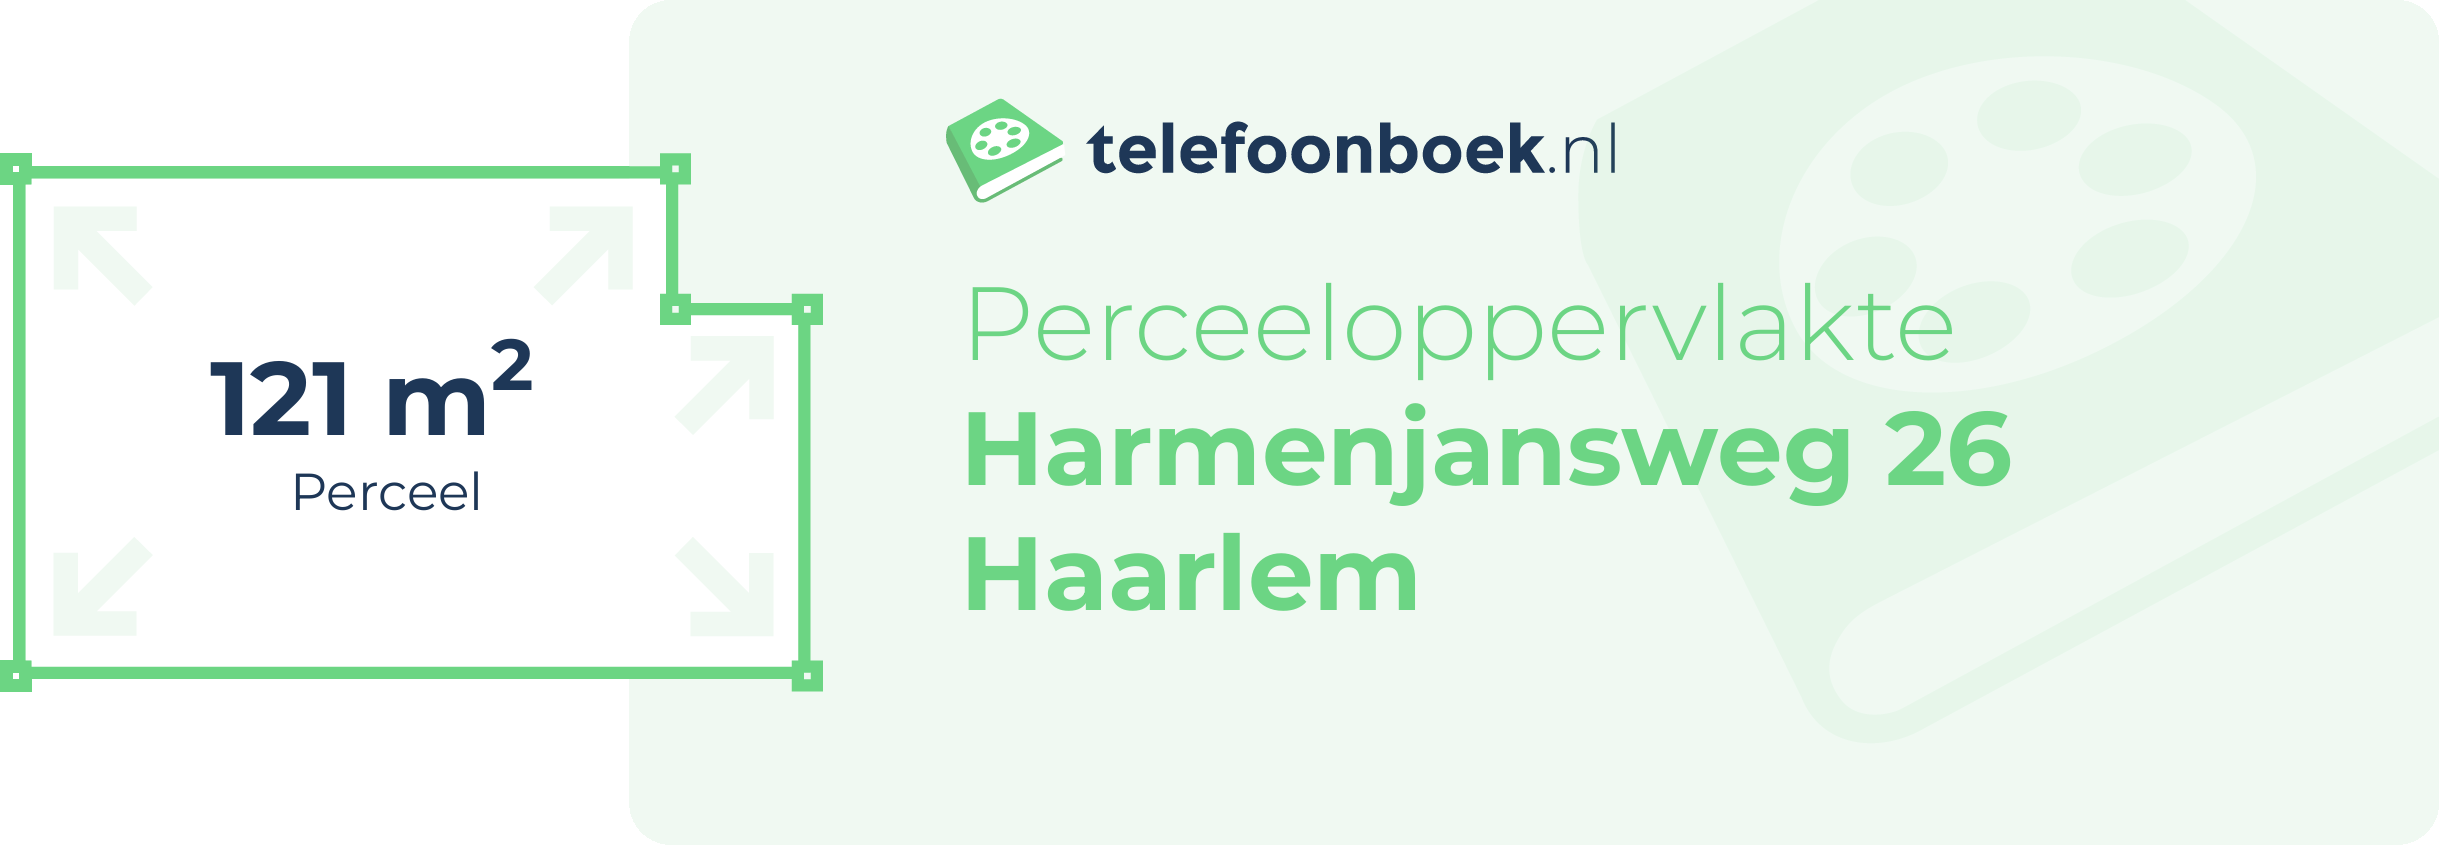 Perceeloppervlakte Harmenjansweg 26 Haarlem